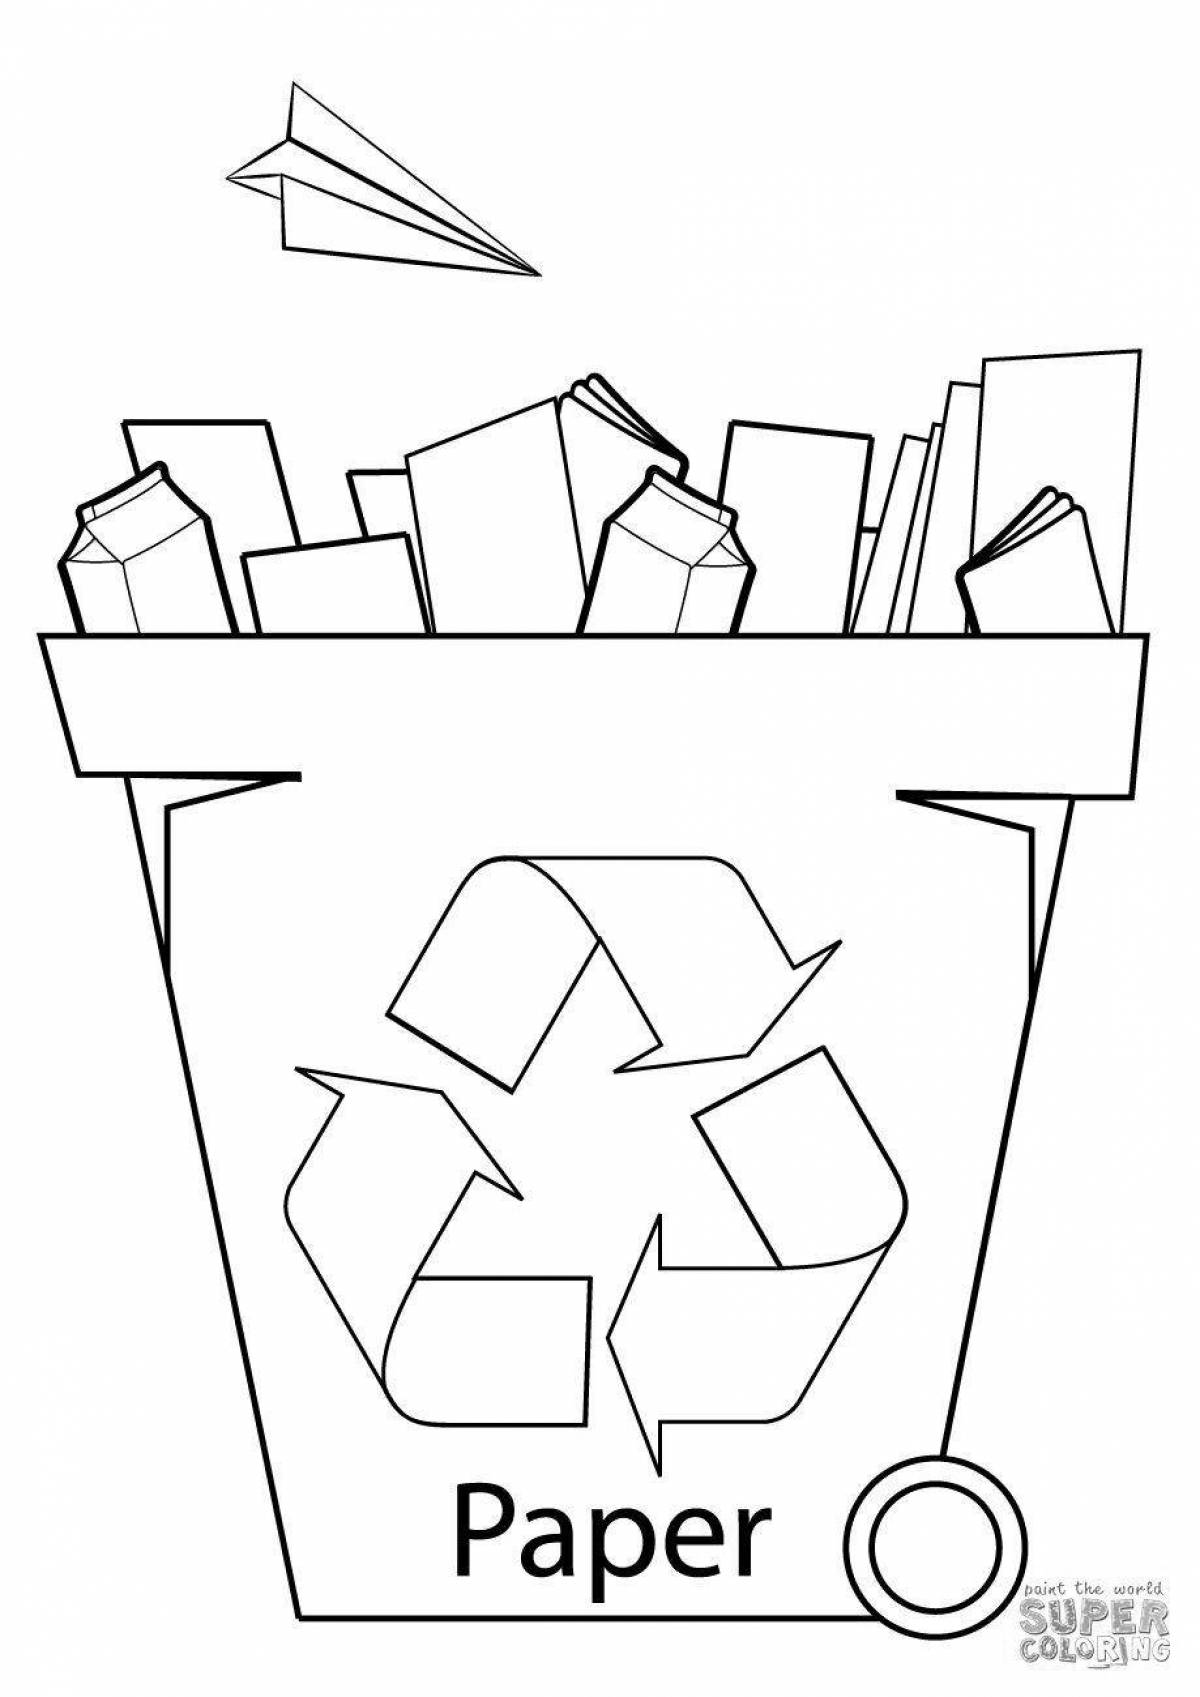 Сортировка мусора #12